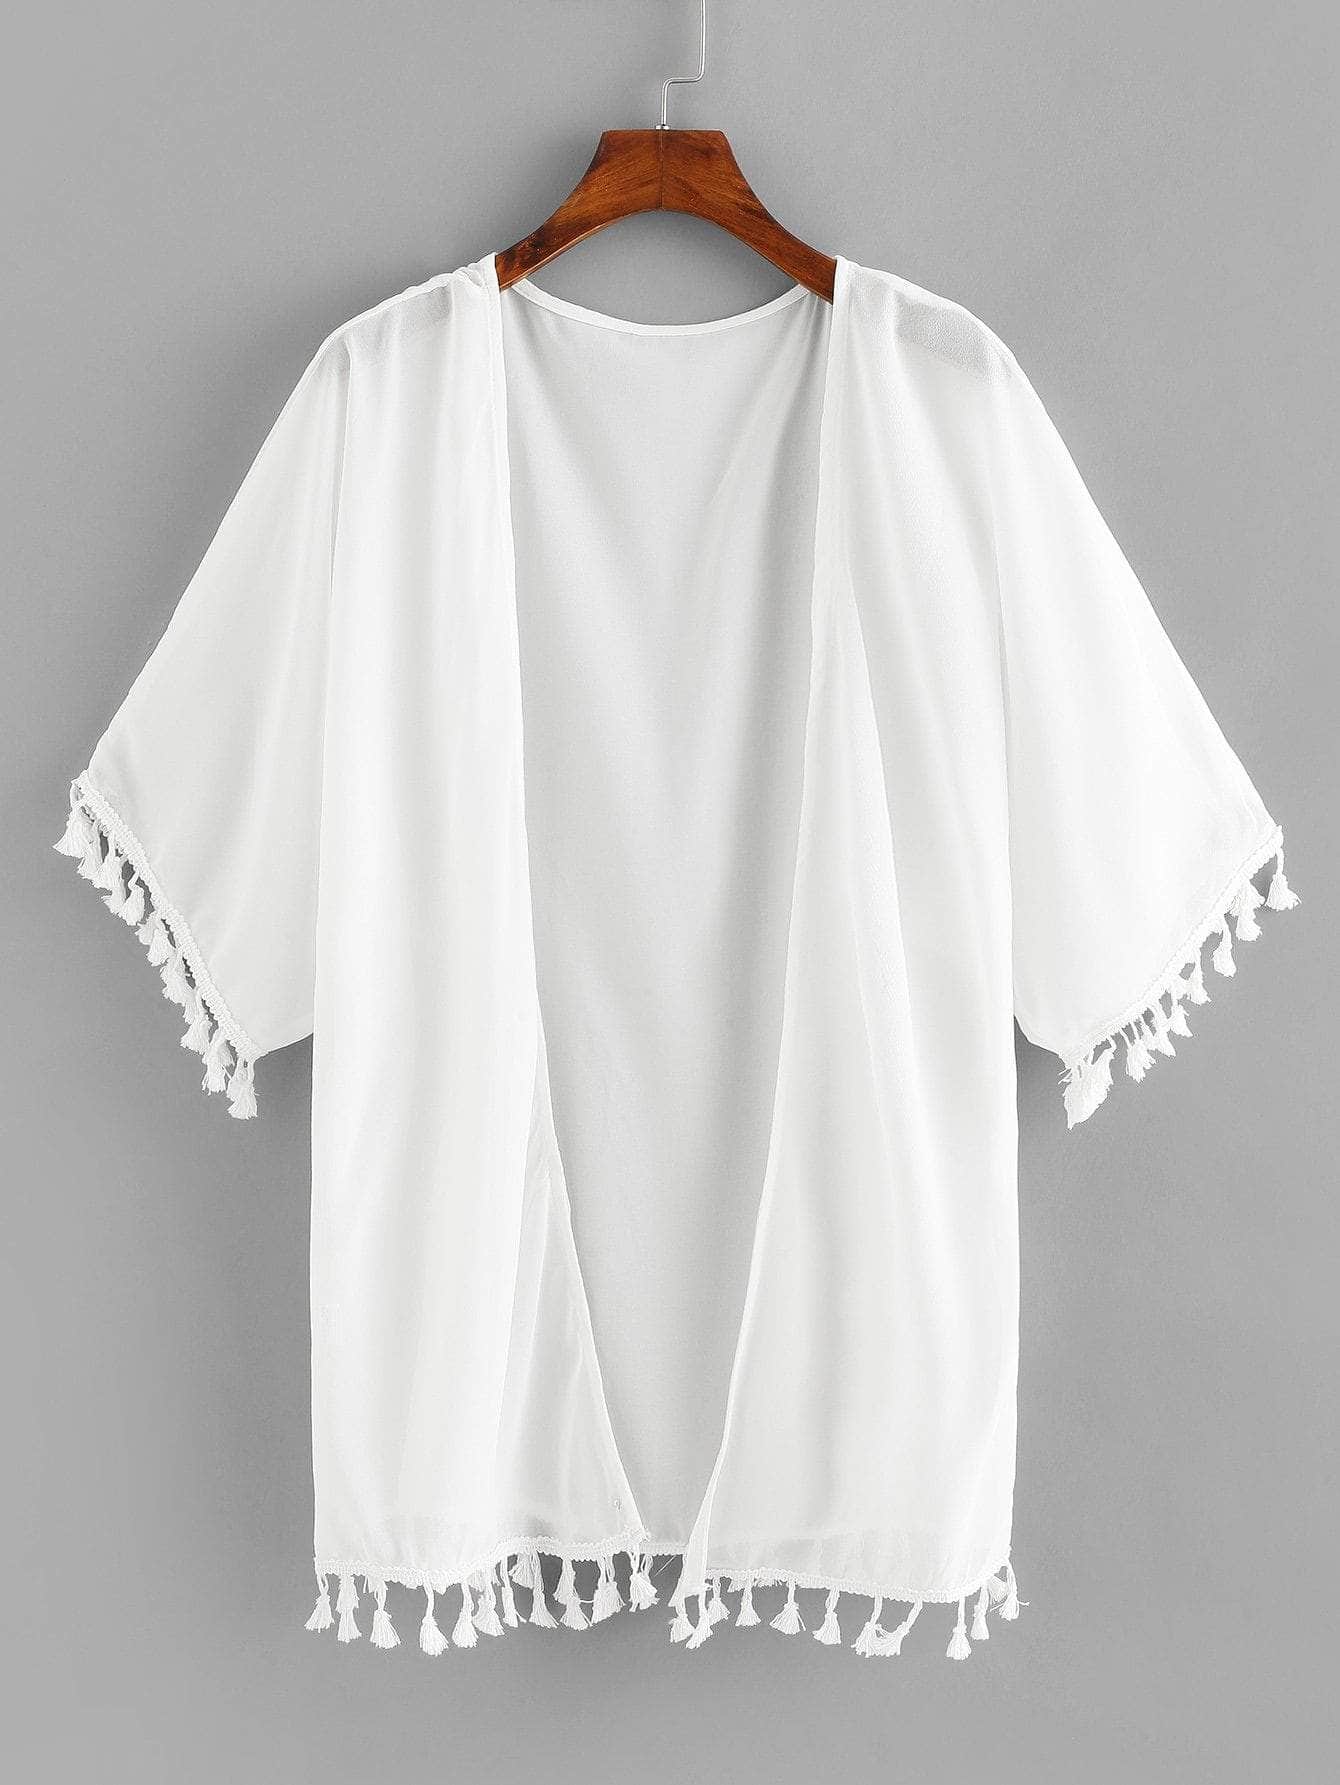 Blanco / L Kimono abierto con borlas